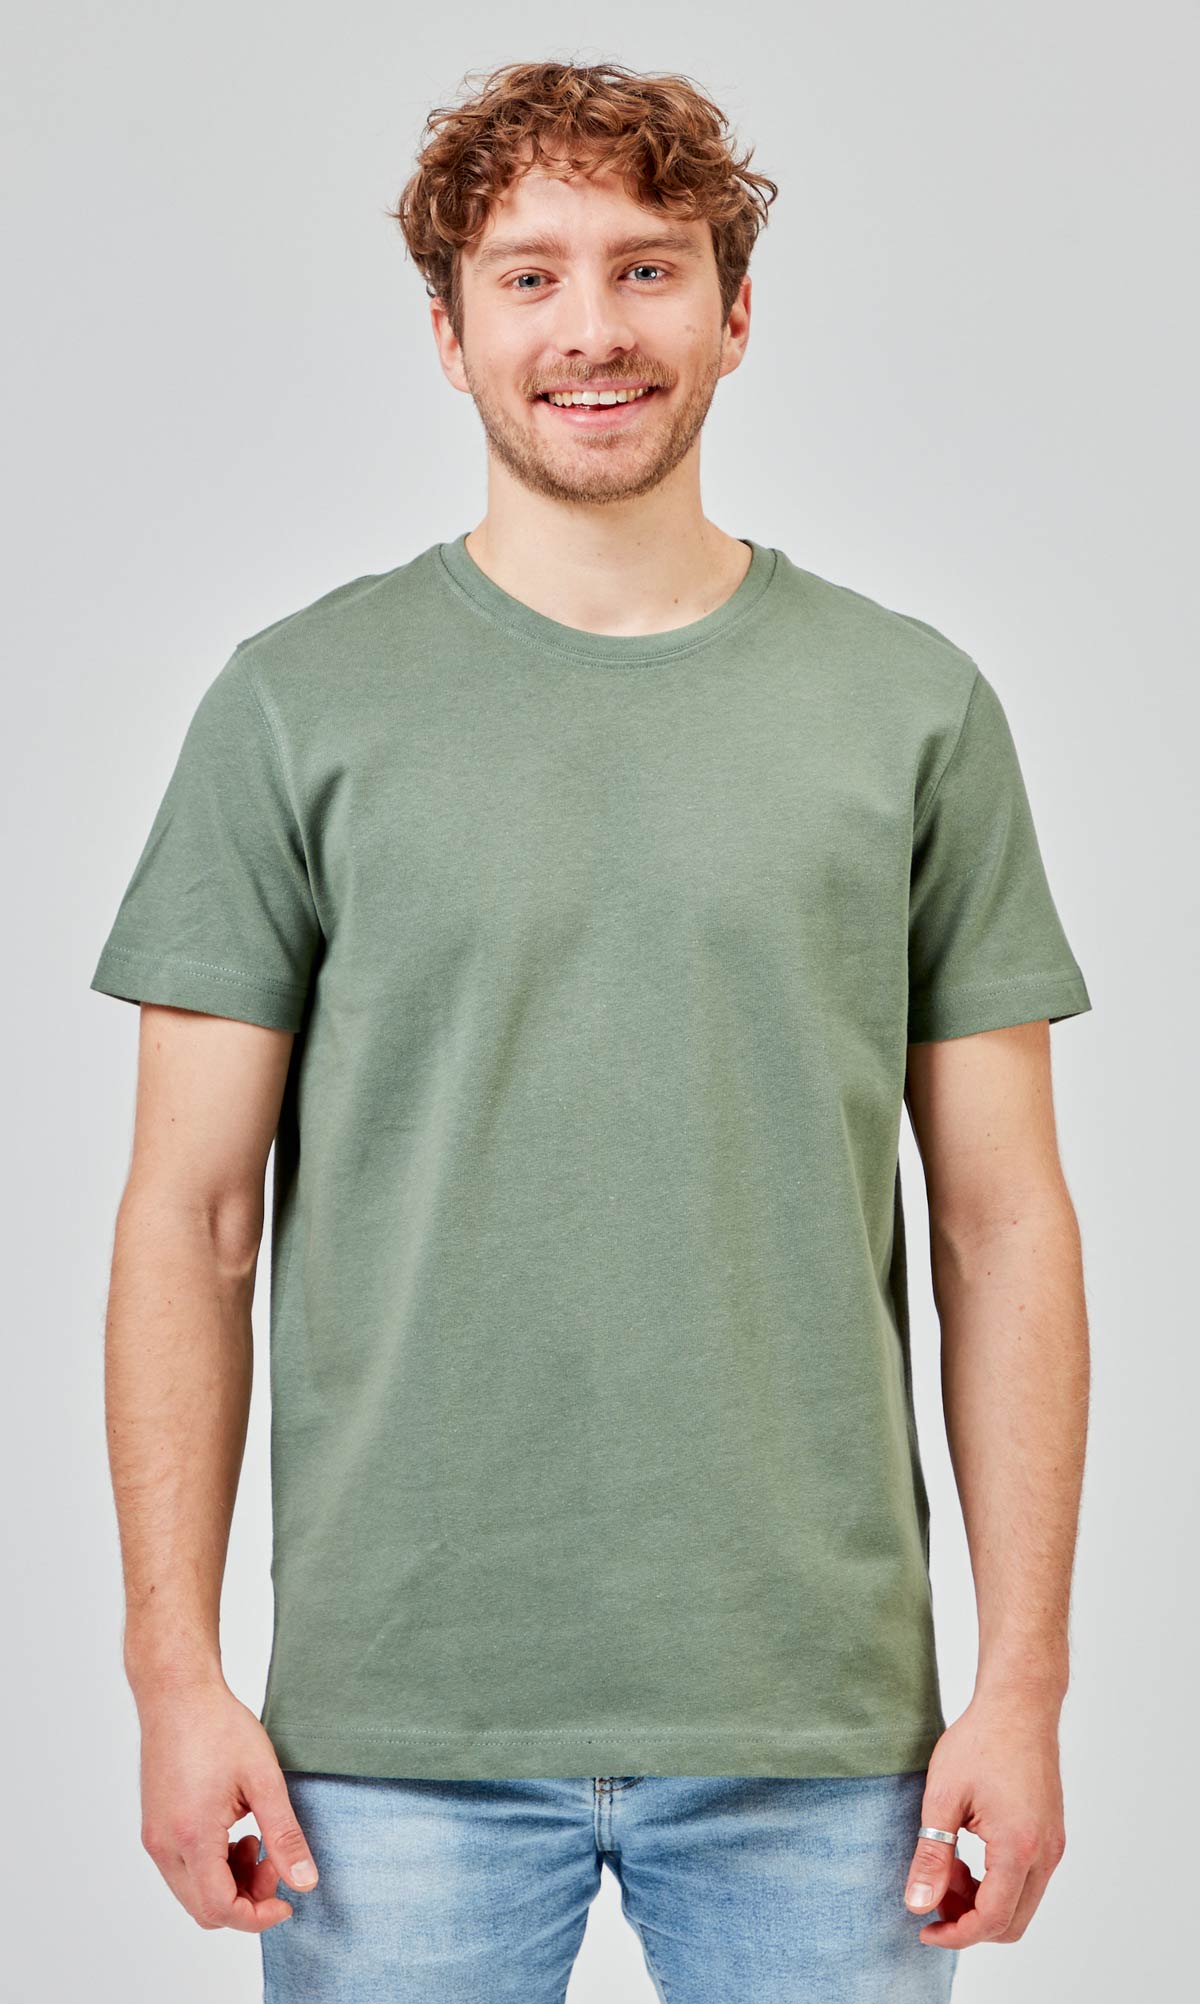 TShirt Premium Baumwolle GOTS Green 